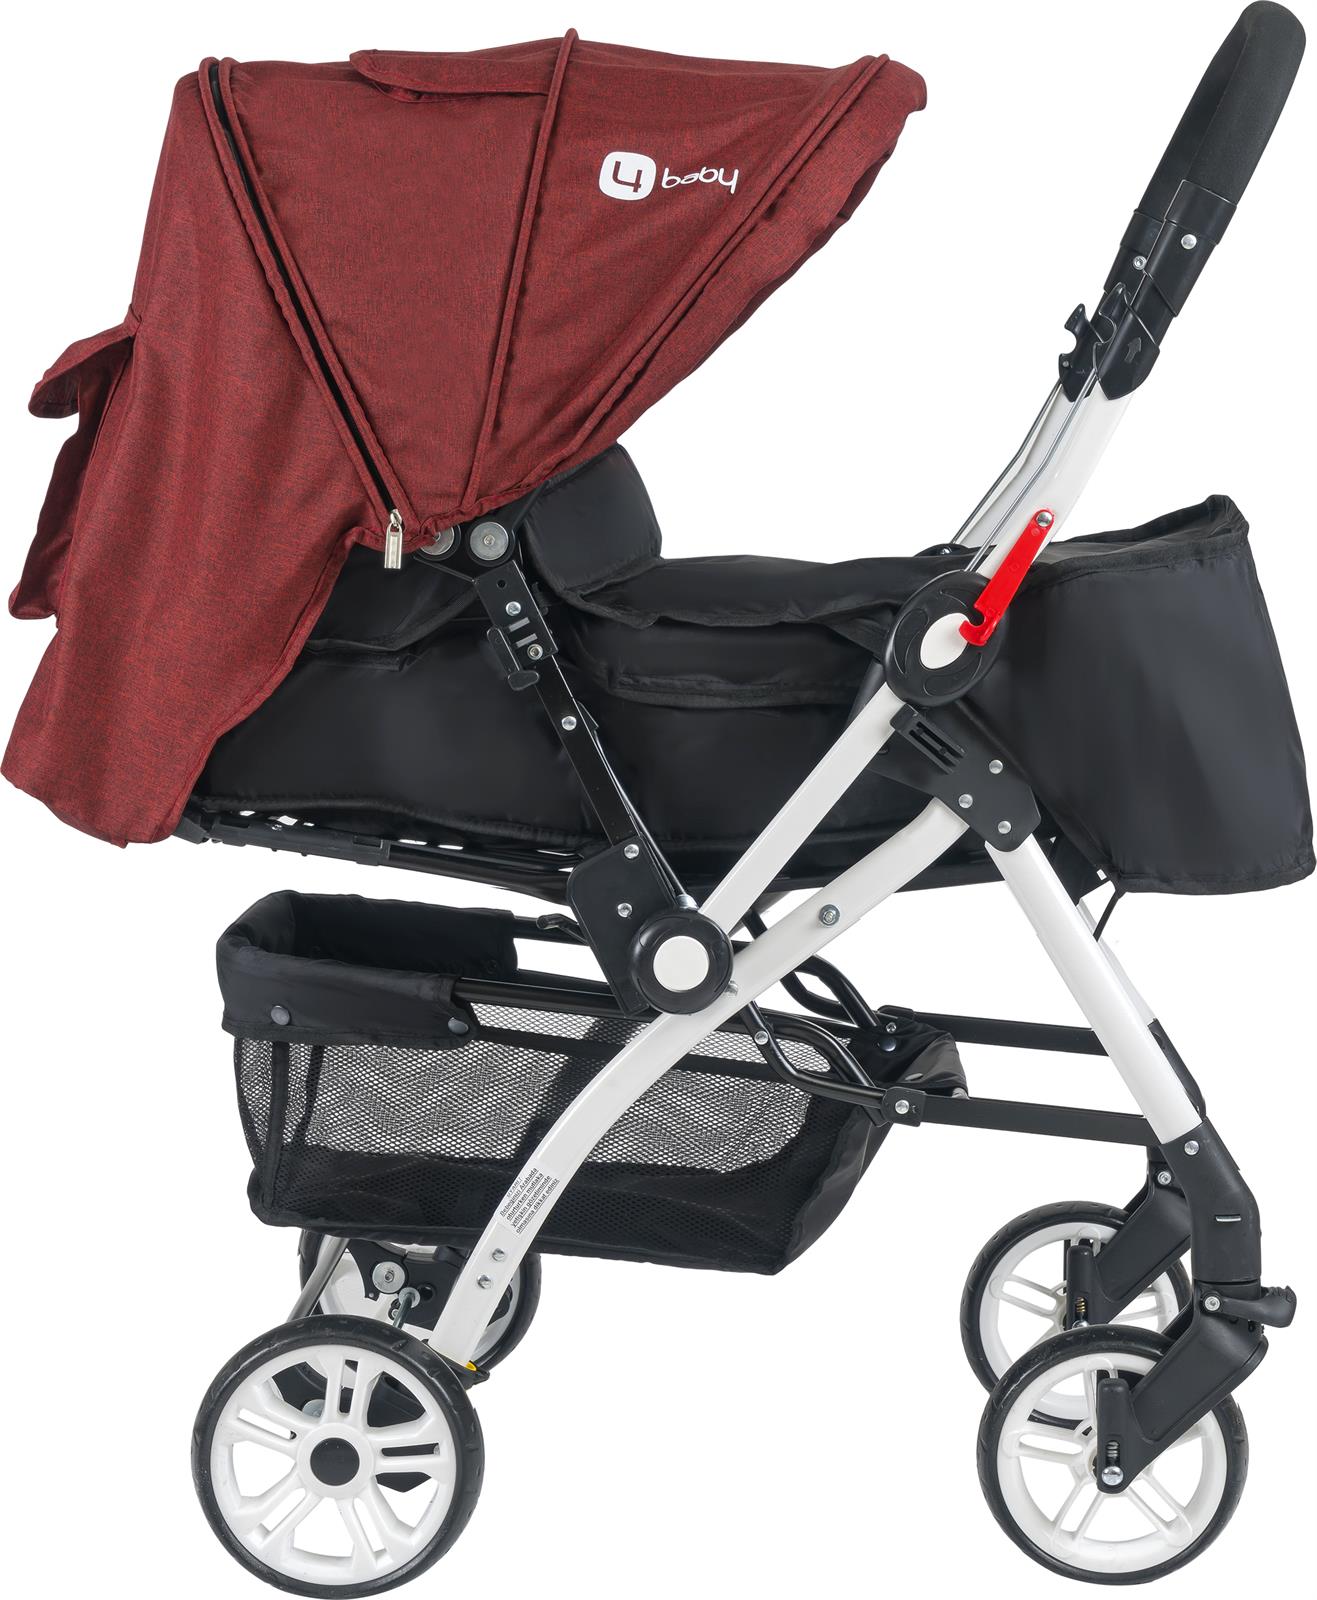 4 Baby Active Travel Sistem Bebek Arabası  Kahverengi